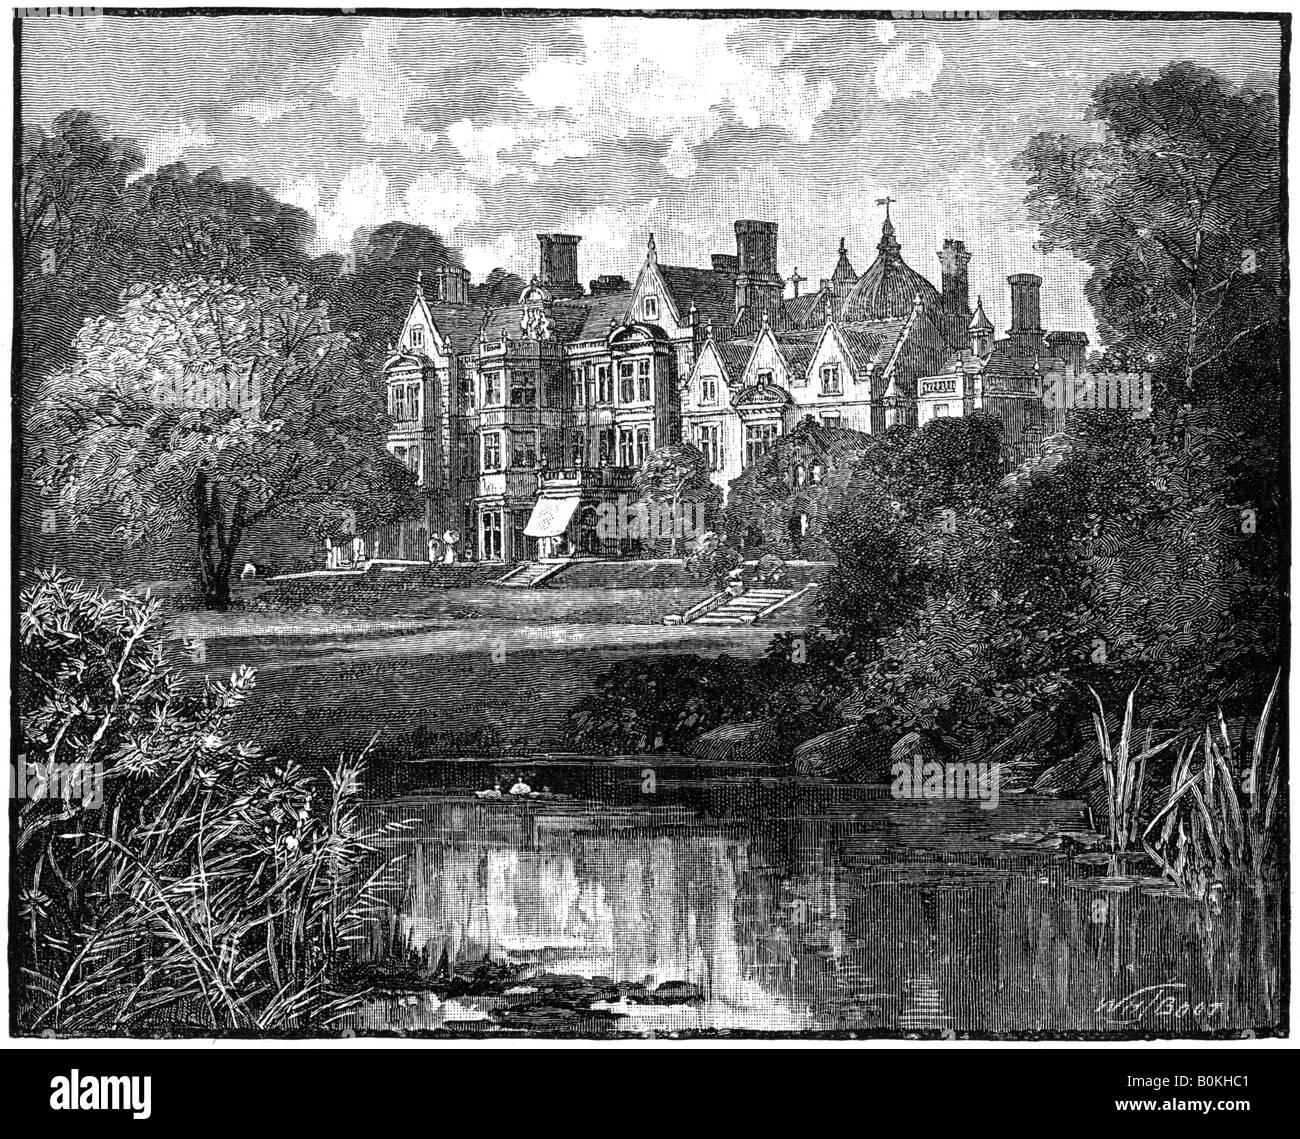 Sandringham House, Norfolk, 1900.Artist: William Henry James Boot Stock Photo